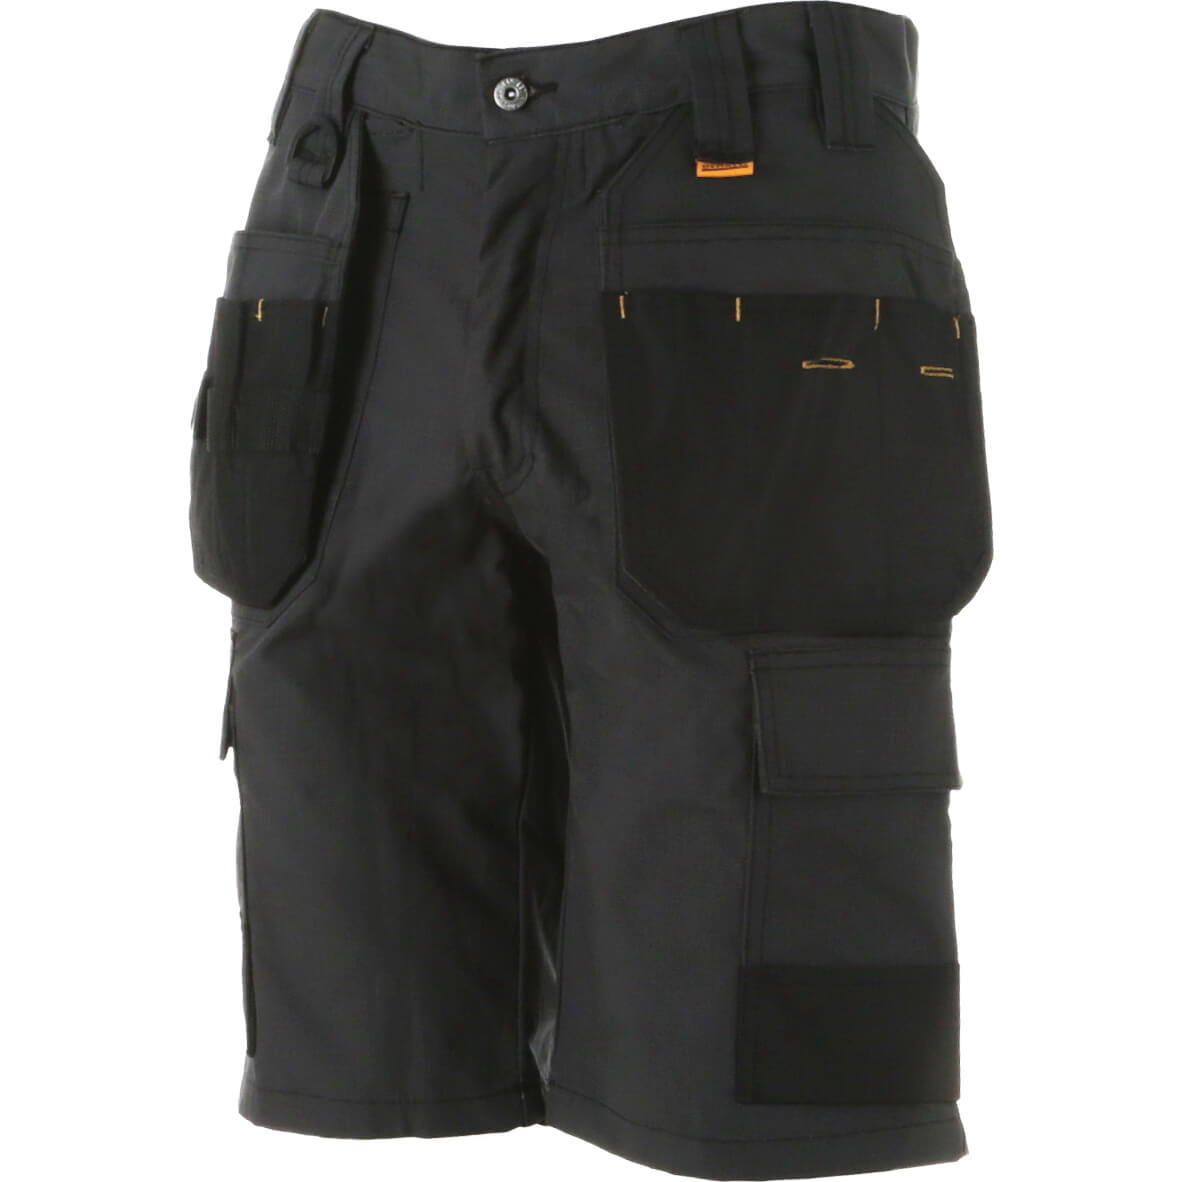 Photos - Safety Equipment DeWALT Cheverley Ripstop Multi Pocket Work Shorts Grey 30" 